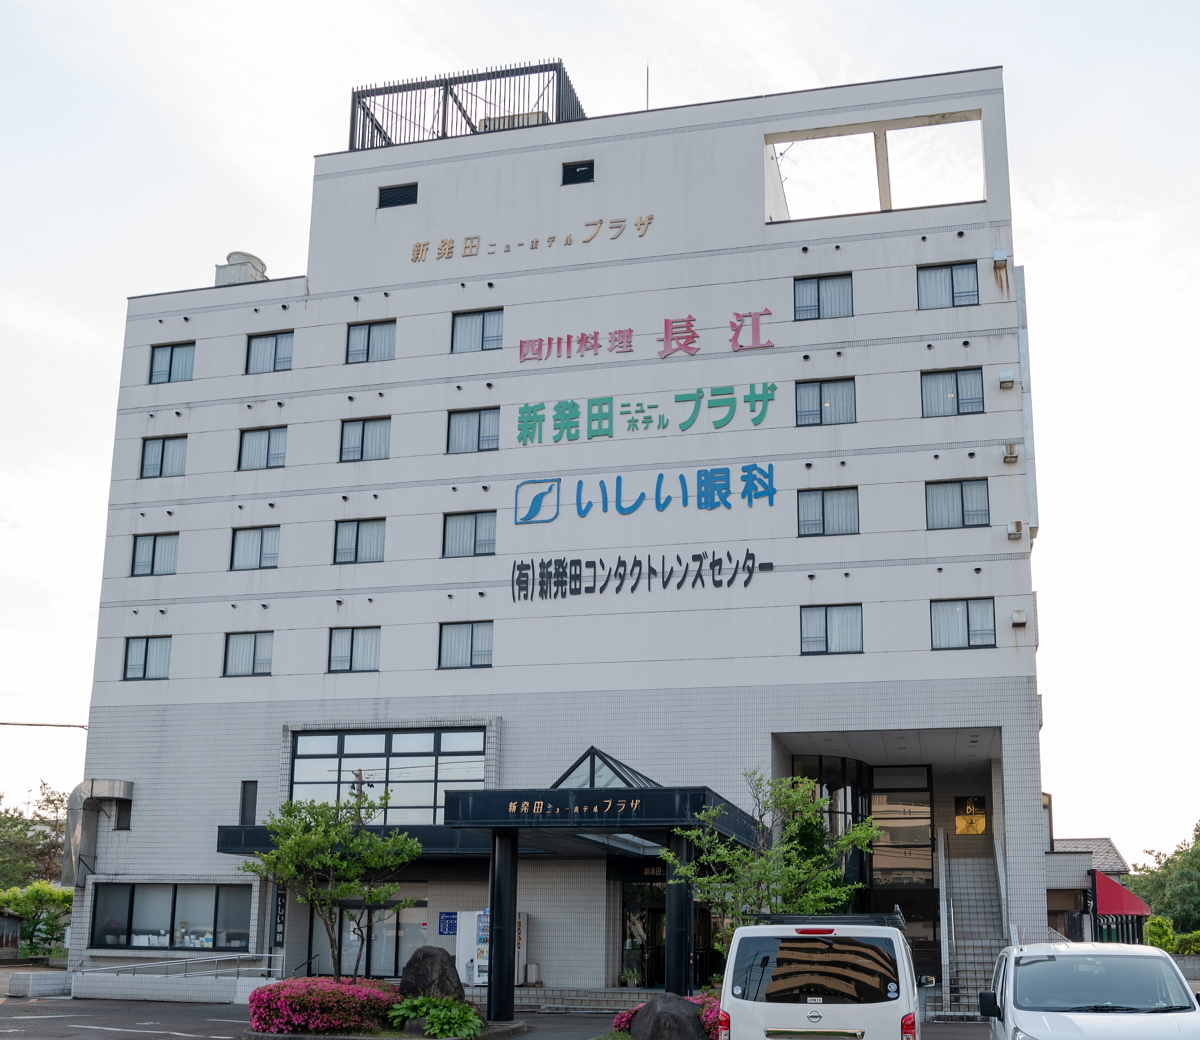 新発田ニューホテルプラザ